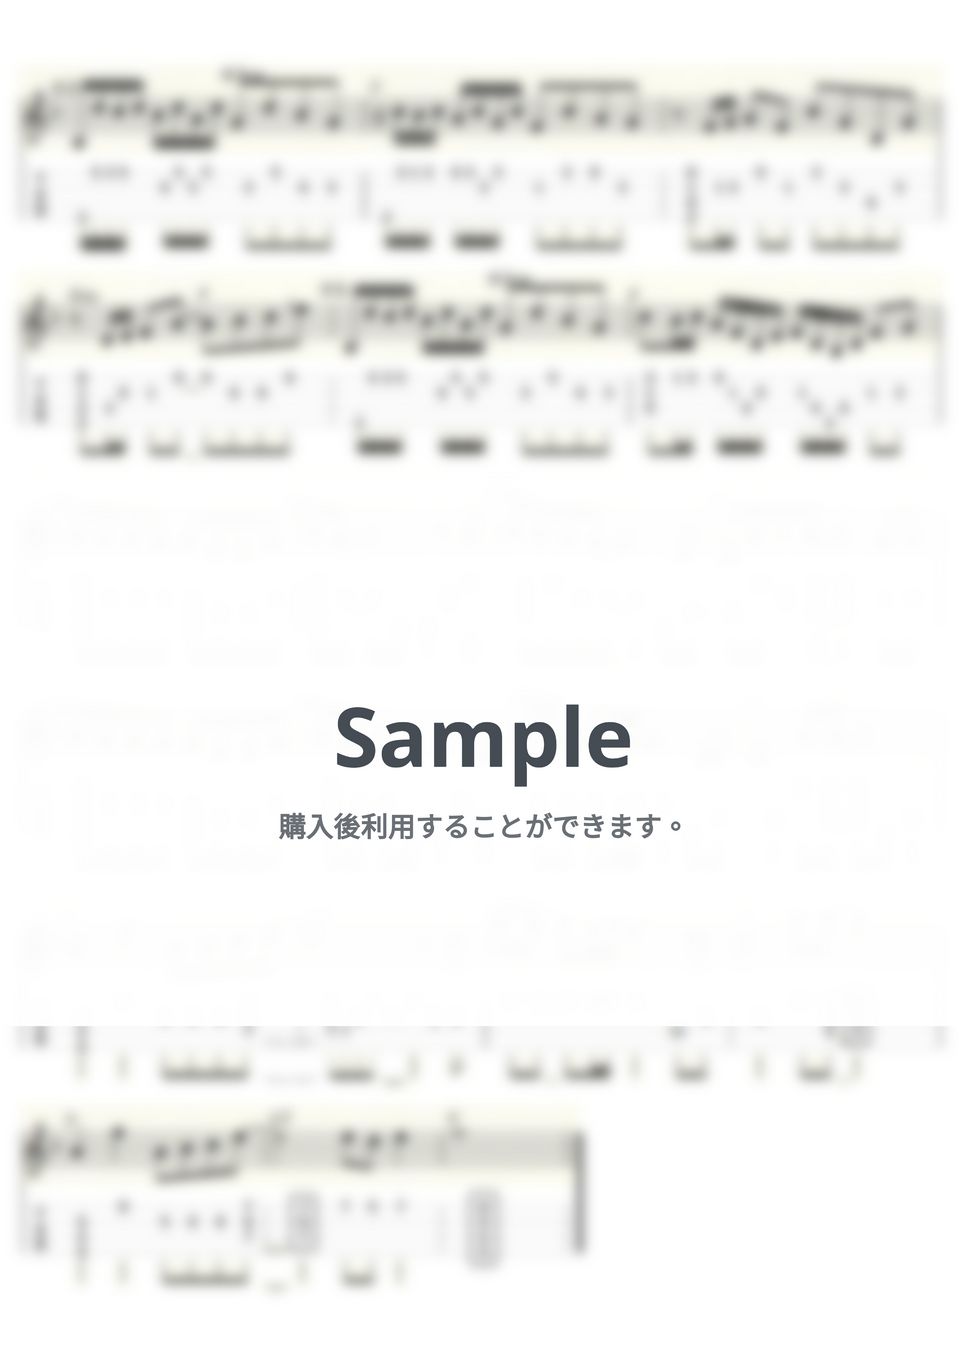 ビートルズ - In My Life (ｳｸﾚﾚｿﾛ/Low-G/中級) by ukulelepapa